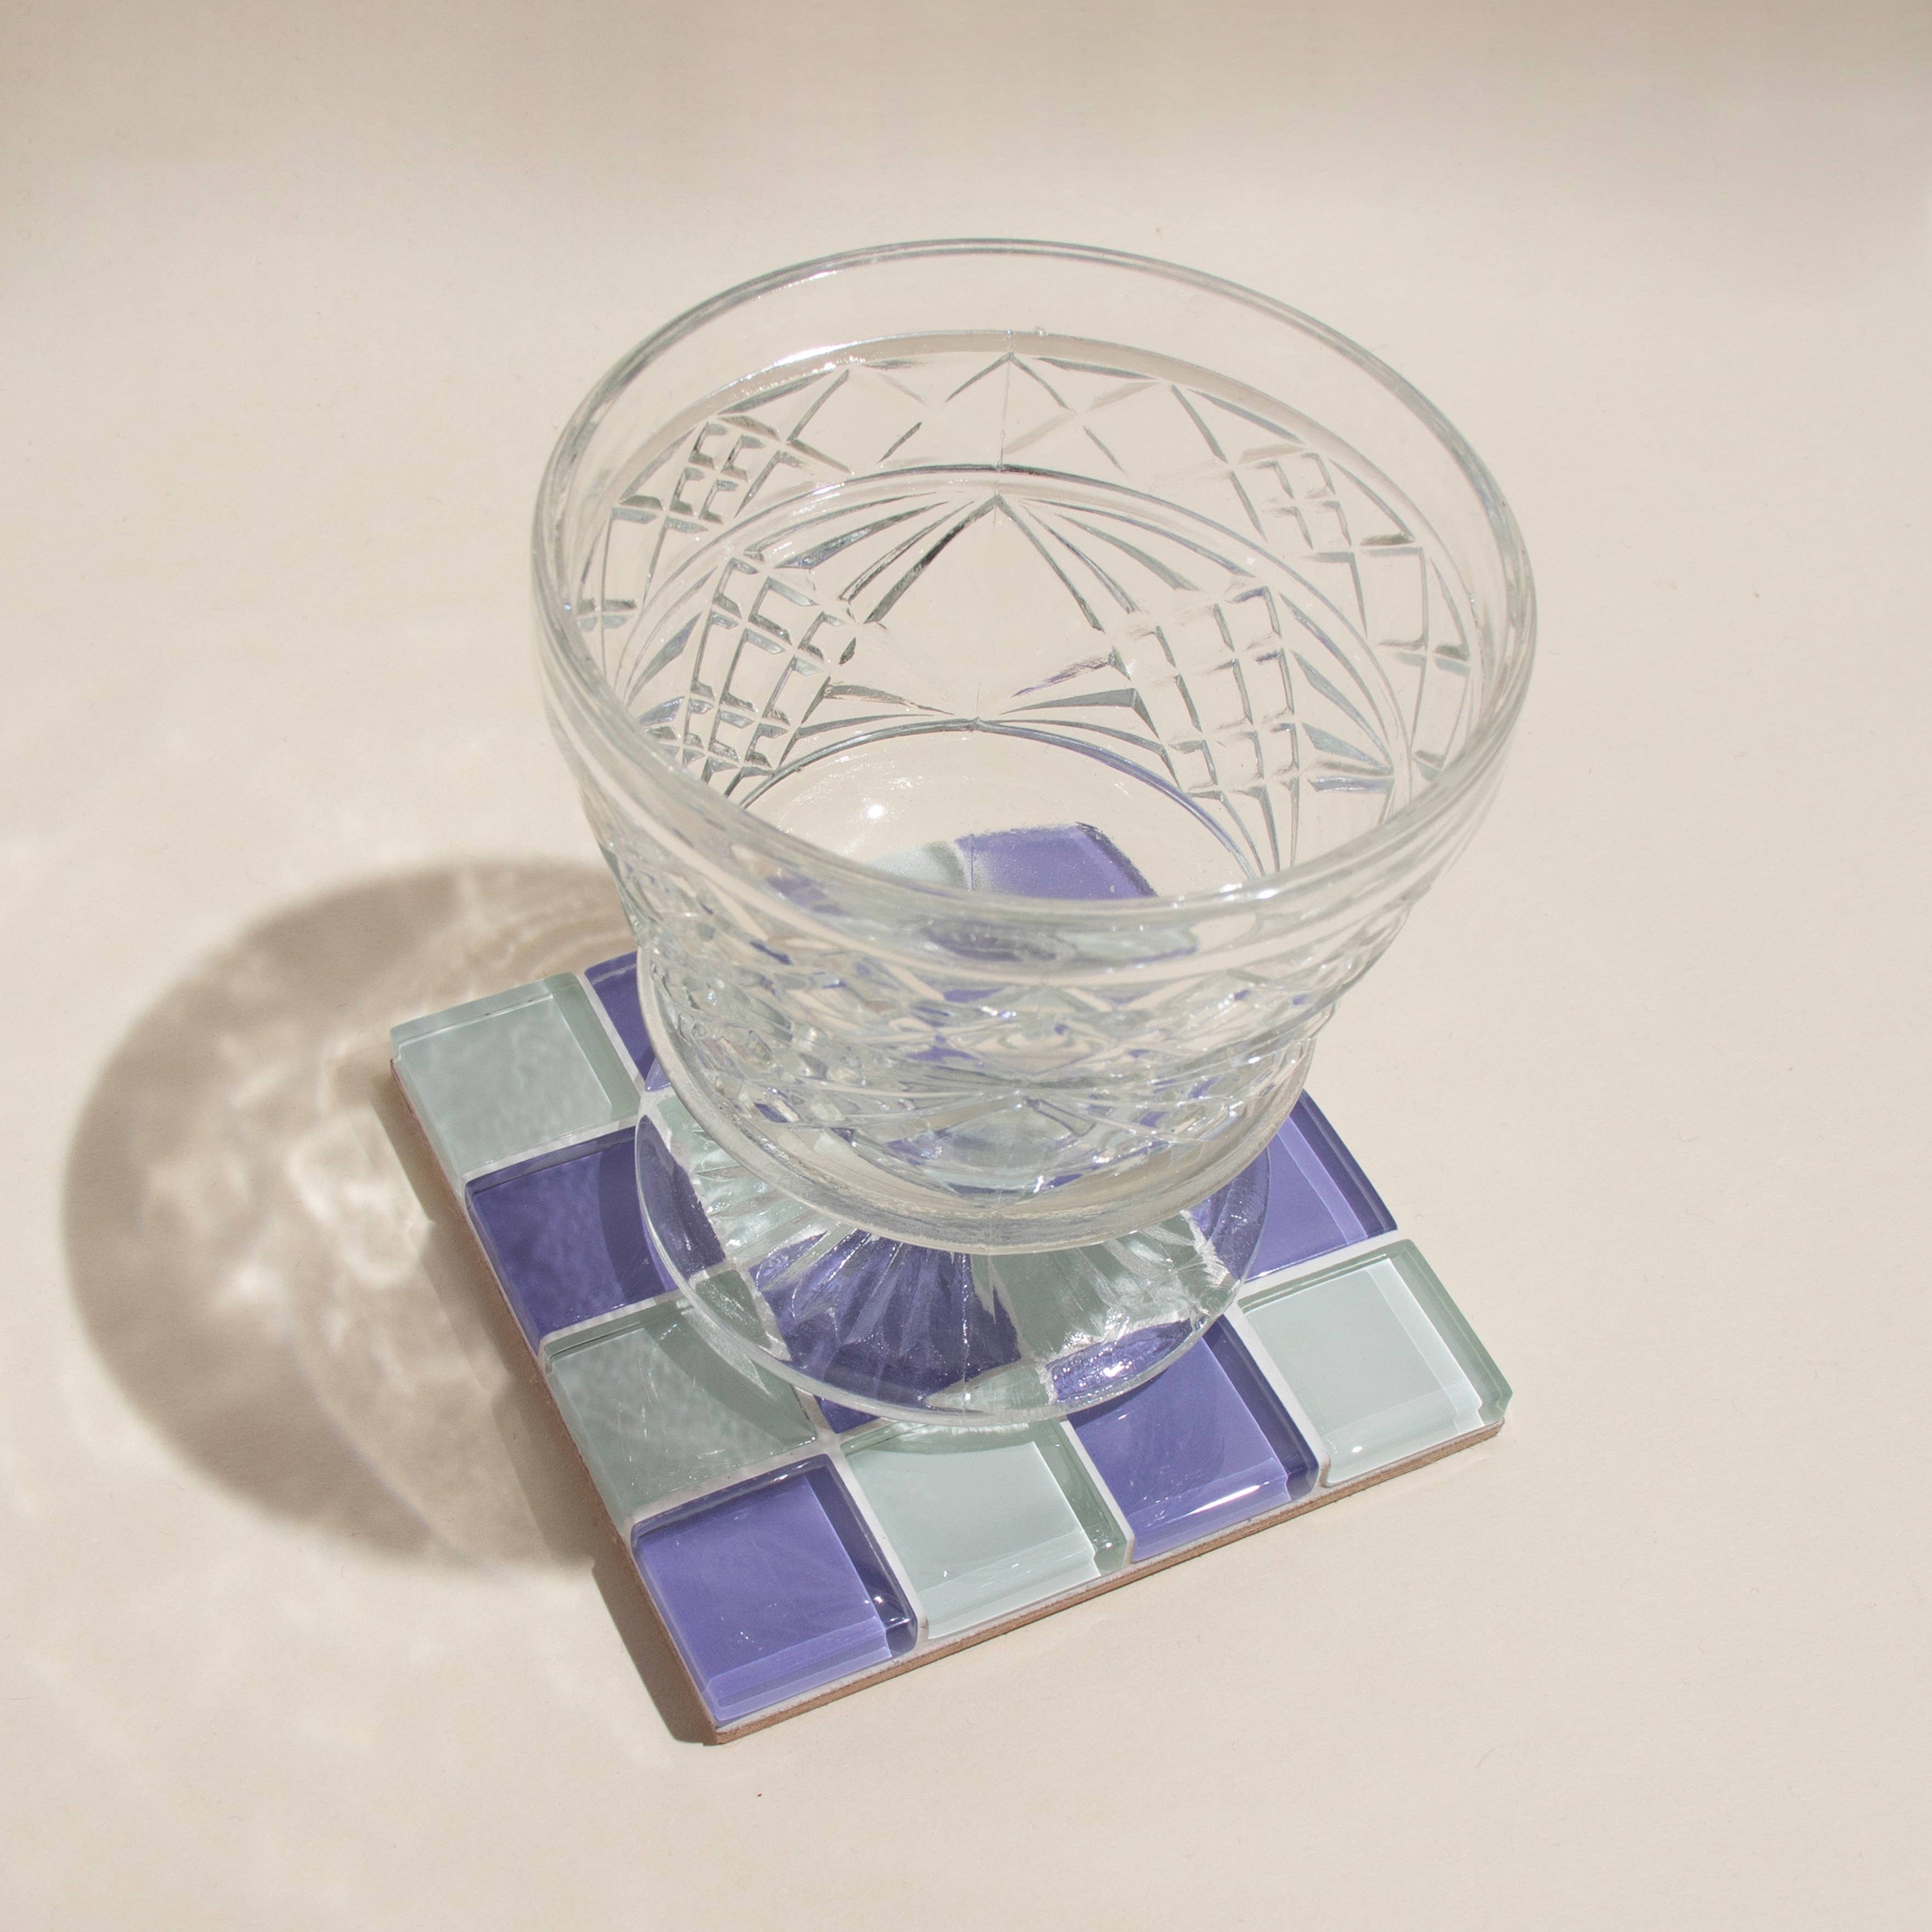 GLASS TILE COASTER - Lavender Latte by Subtle Art Studios